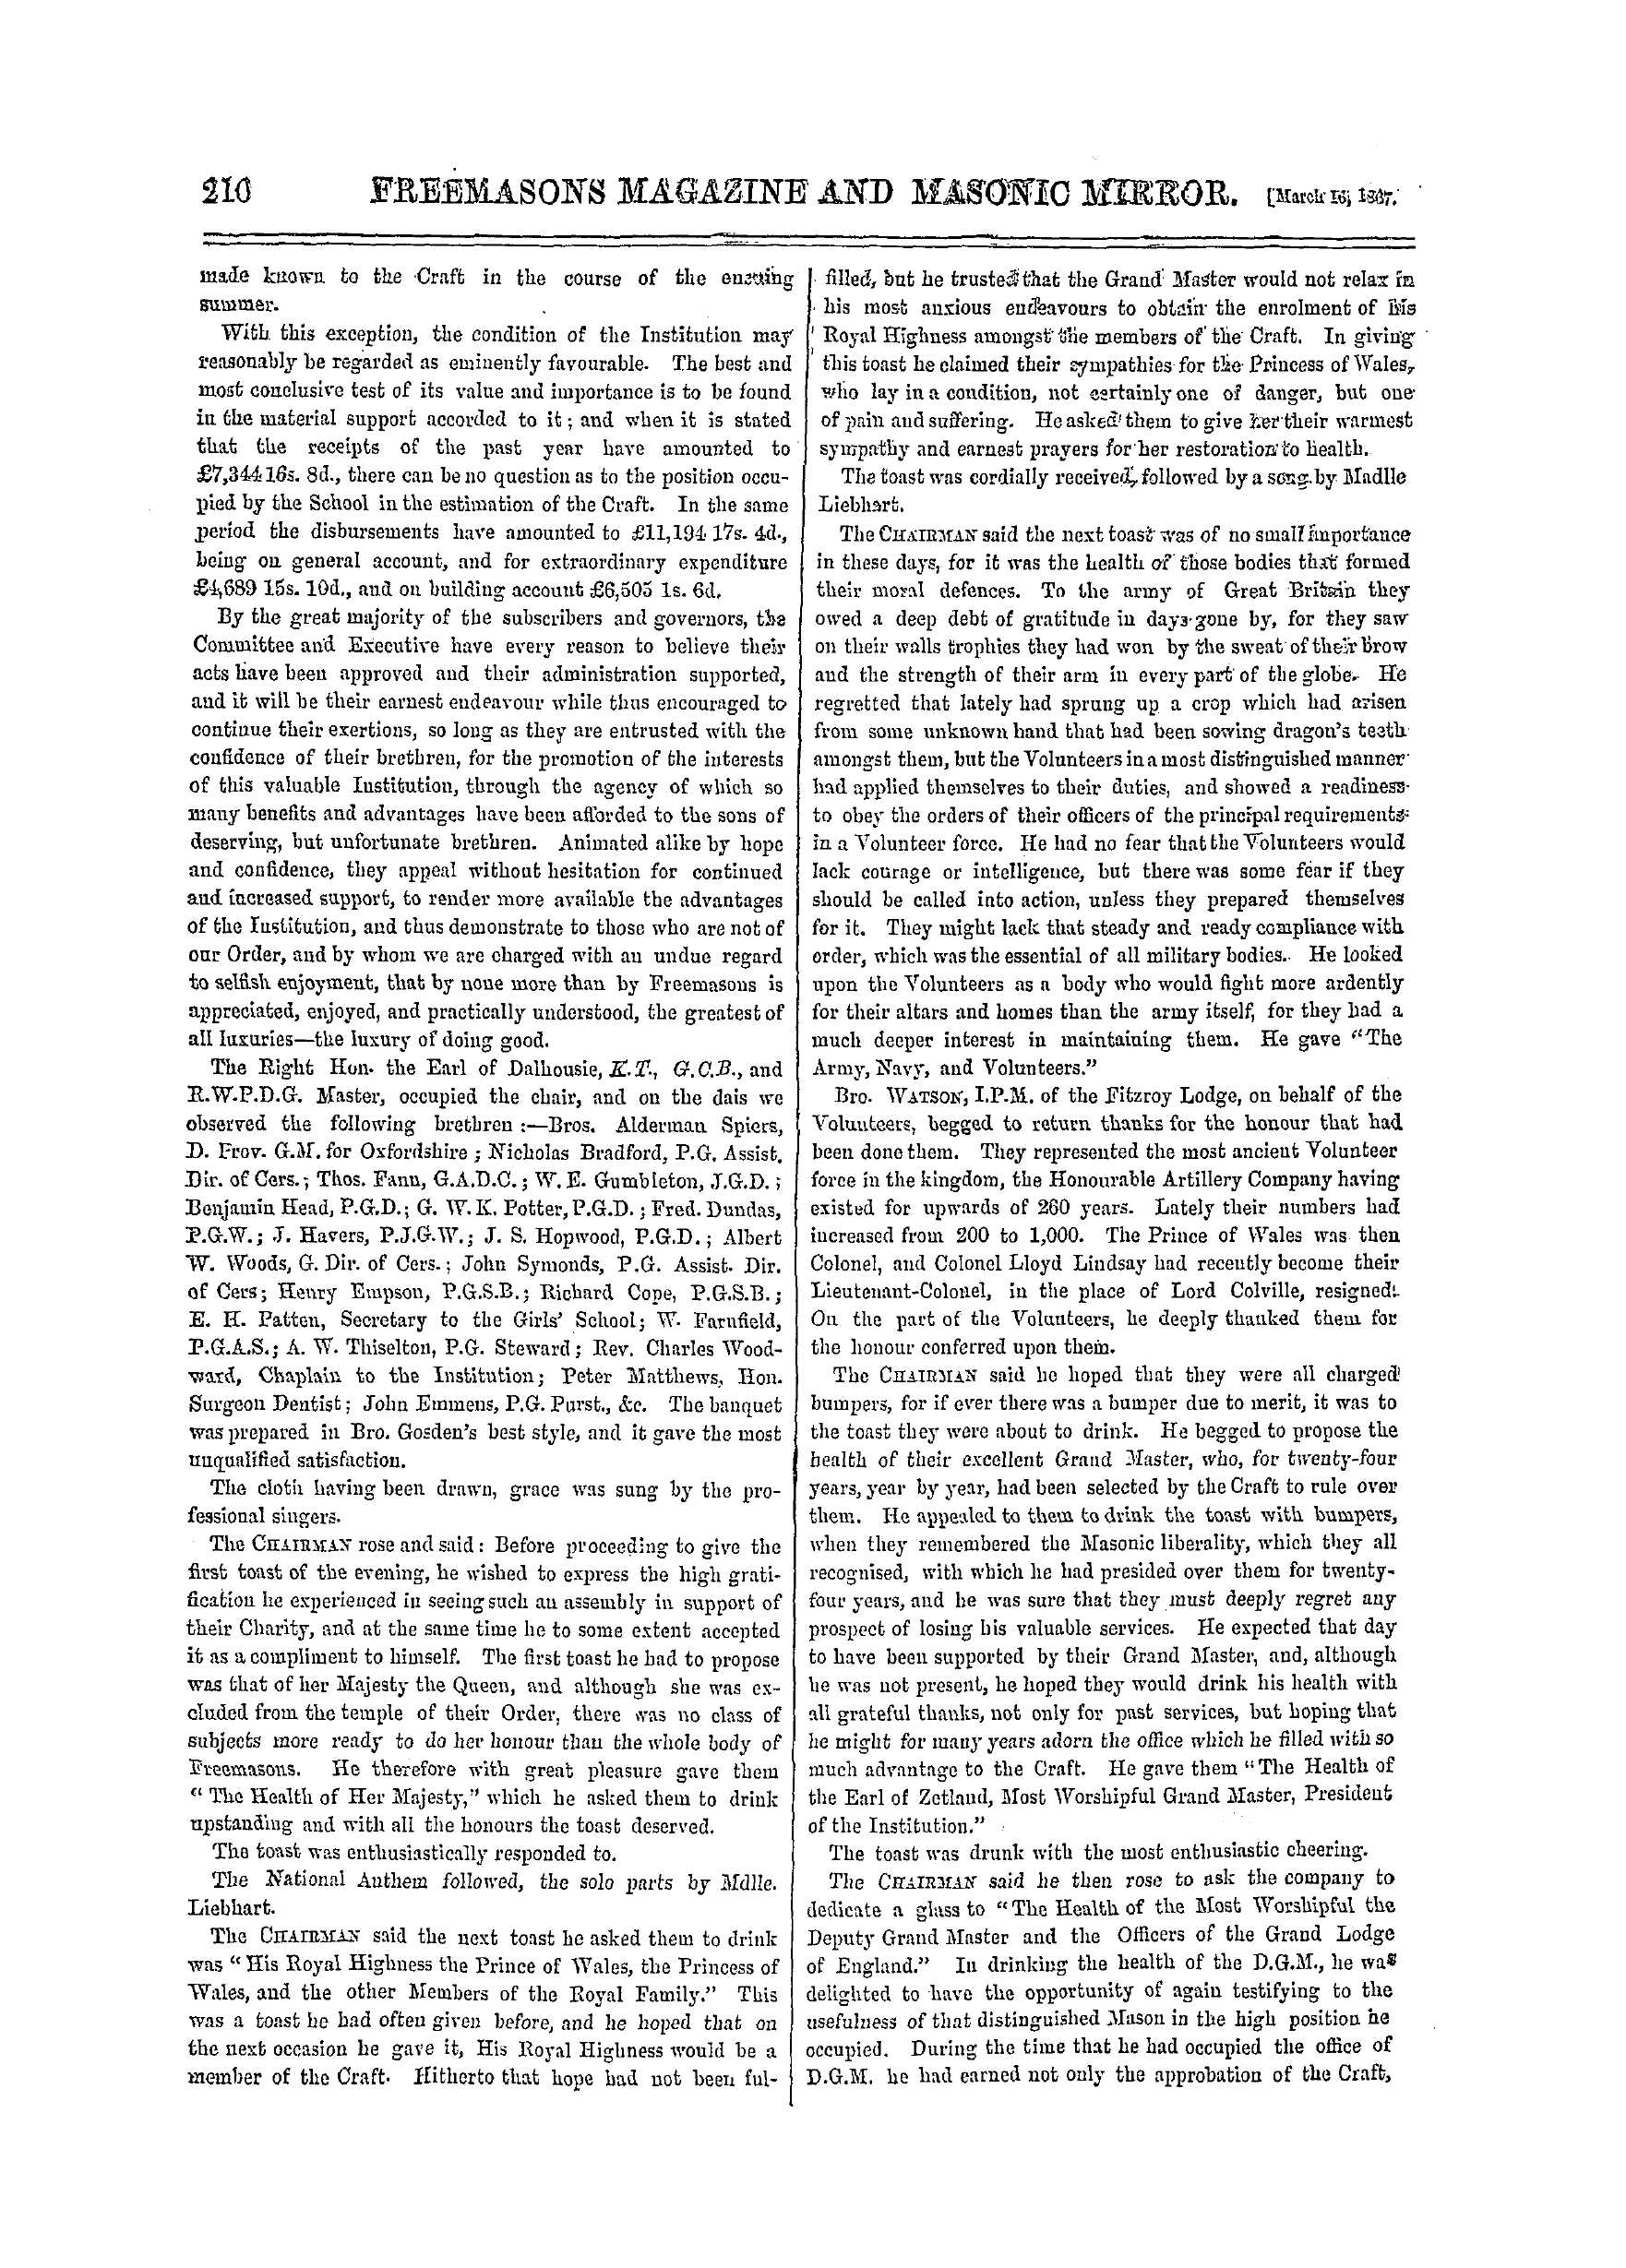 The Freemasons' Monthly Magazine: 1867-03-16 - Masonic Mem.